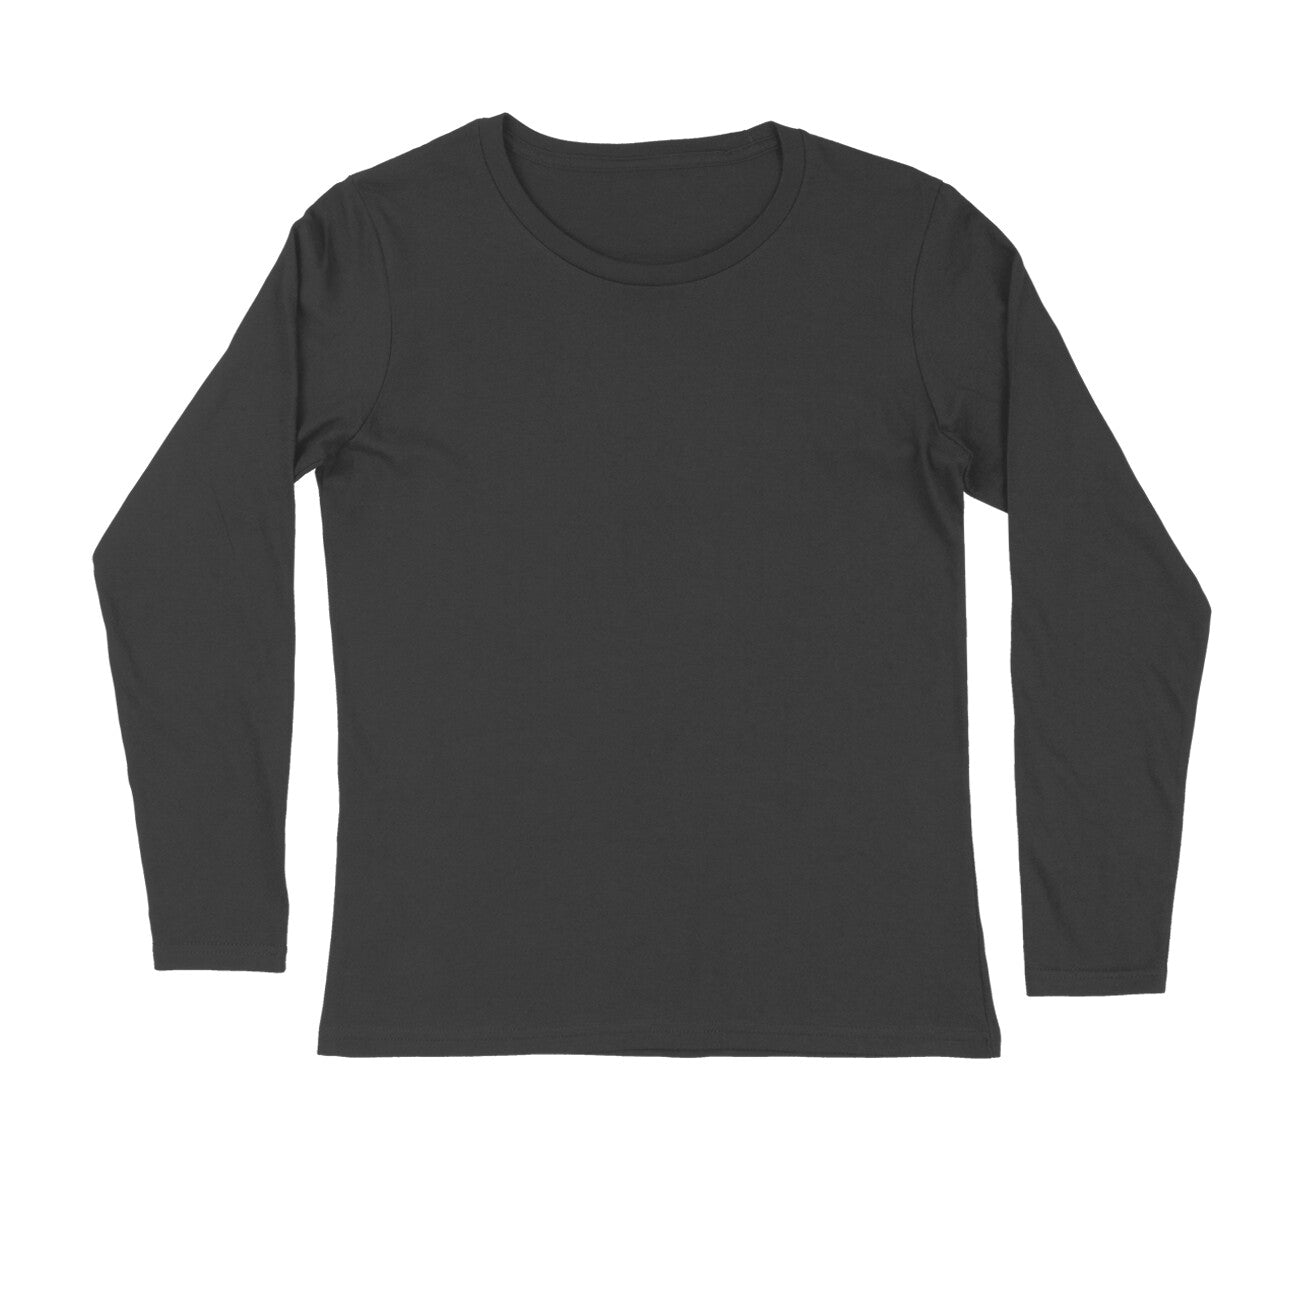 Men's Black Full Sleeve T-shirt